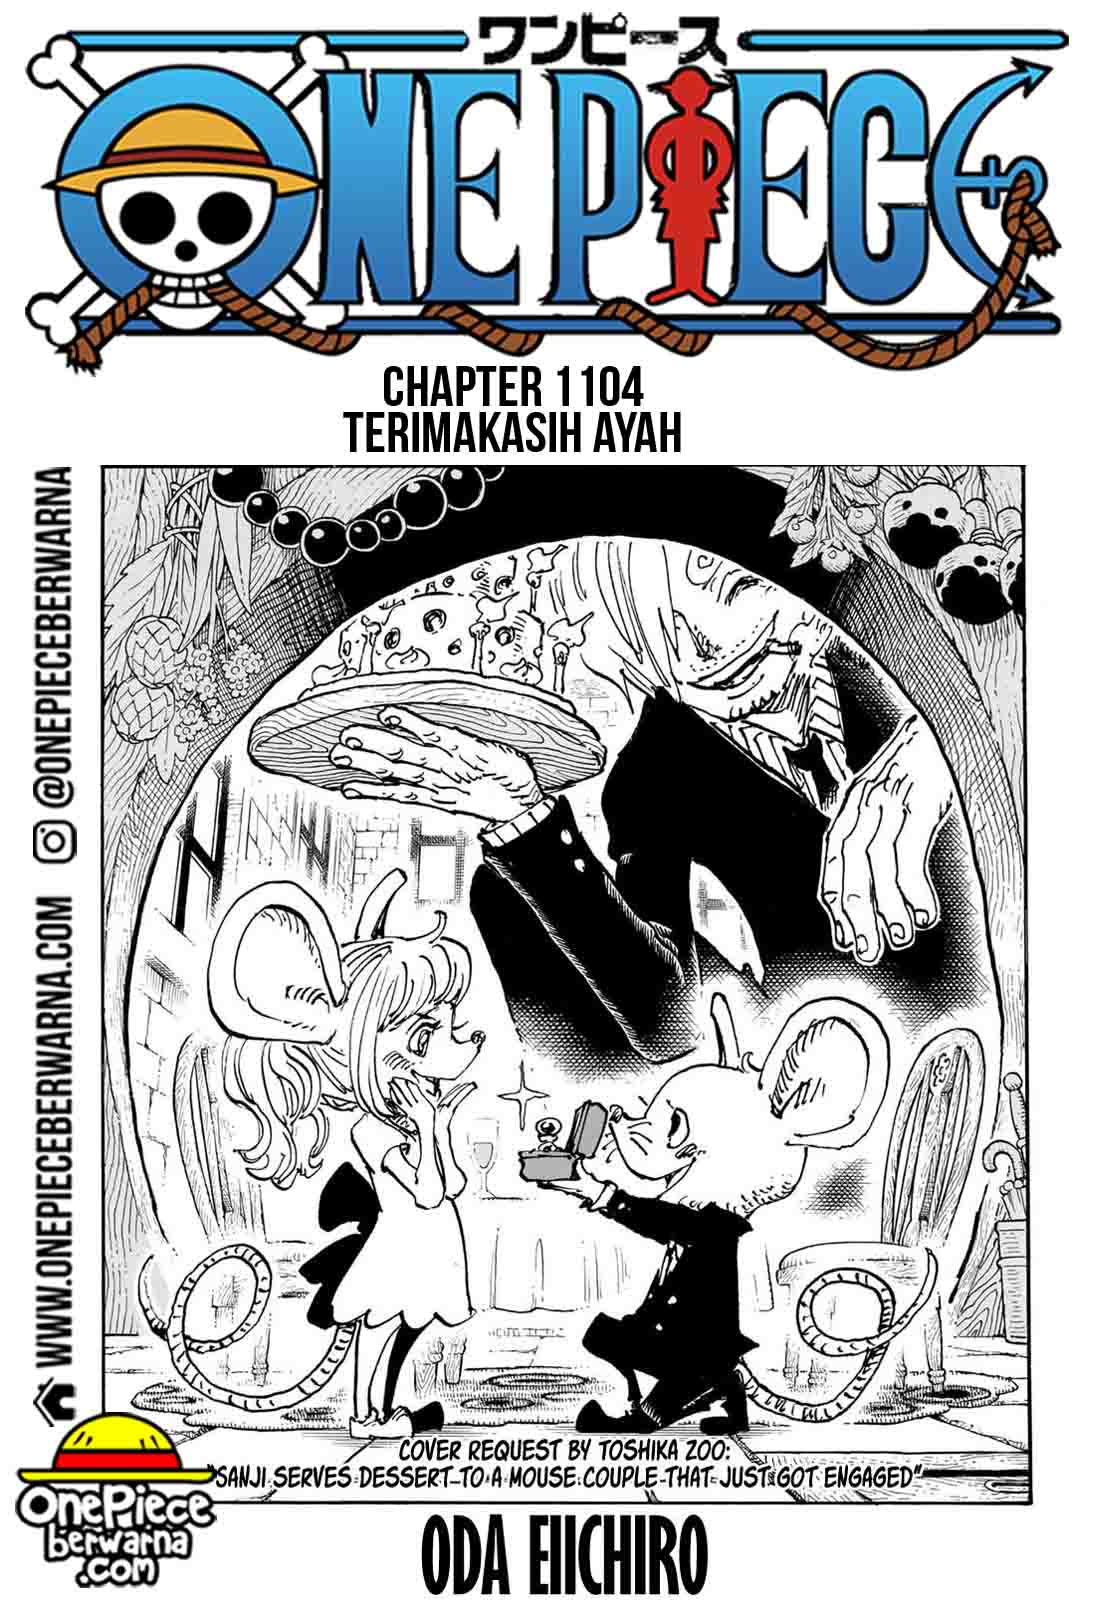 Baca manga komik One Piece Berwarna Bahasa Indonesia HD Chapter 1104